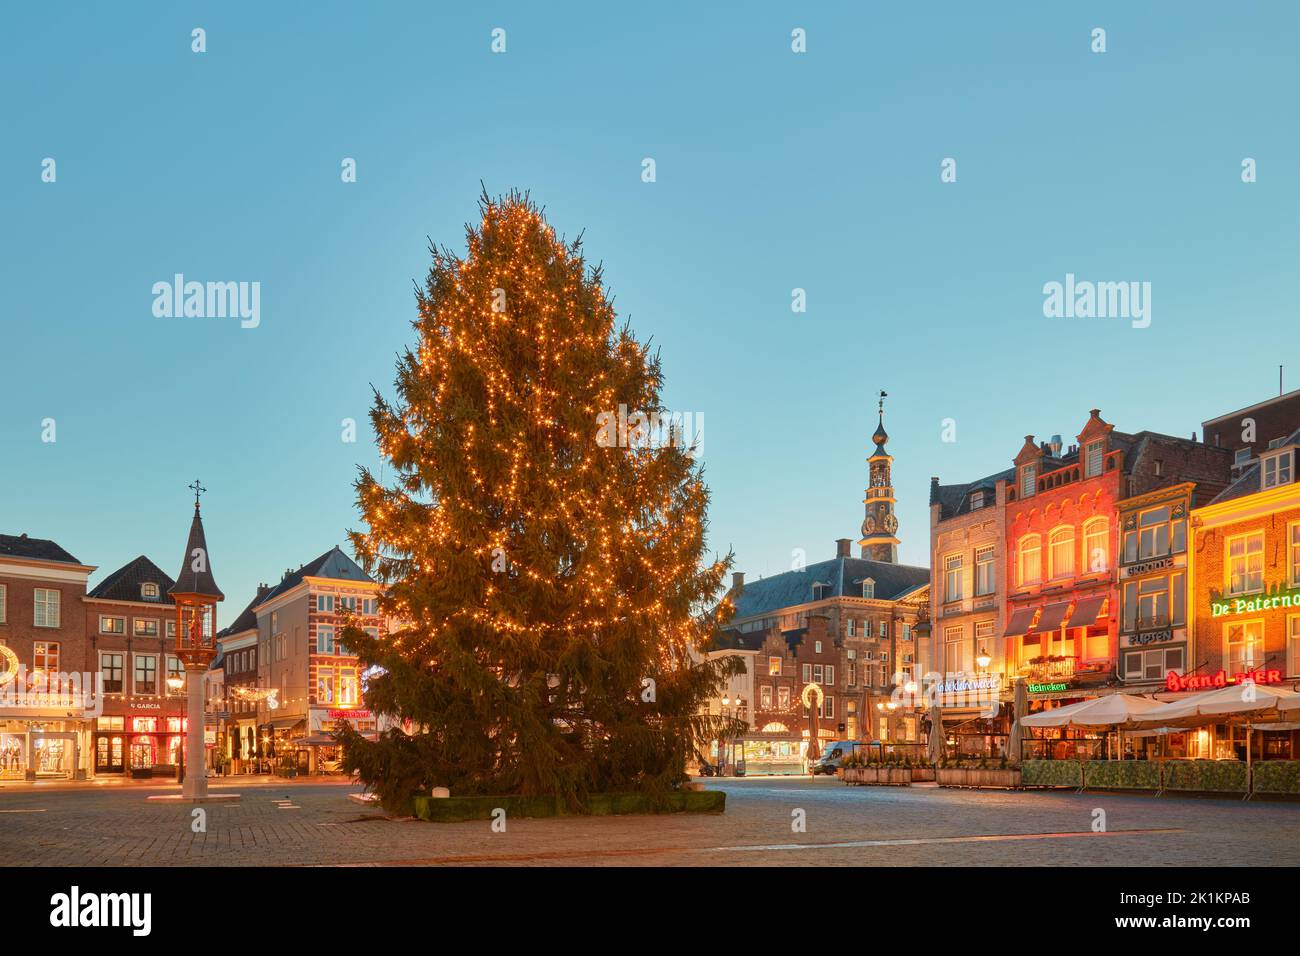 Den bosch, Niederlande - 21. Dezember 2021: Großer weihnachtsbaum mit Lichtern auf dem zentralen Marktplatz 'Markt', umgeben von Pubs, Restaurants und Sho Stockfoto